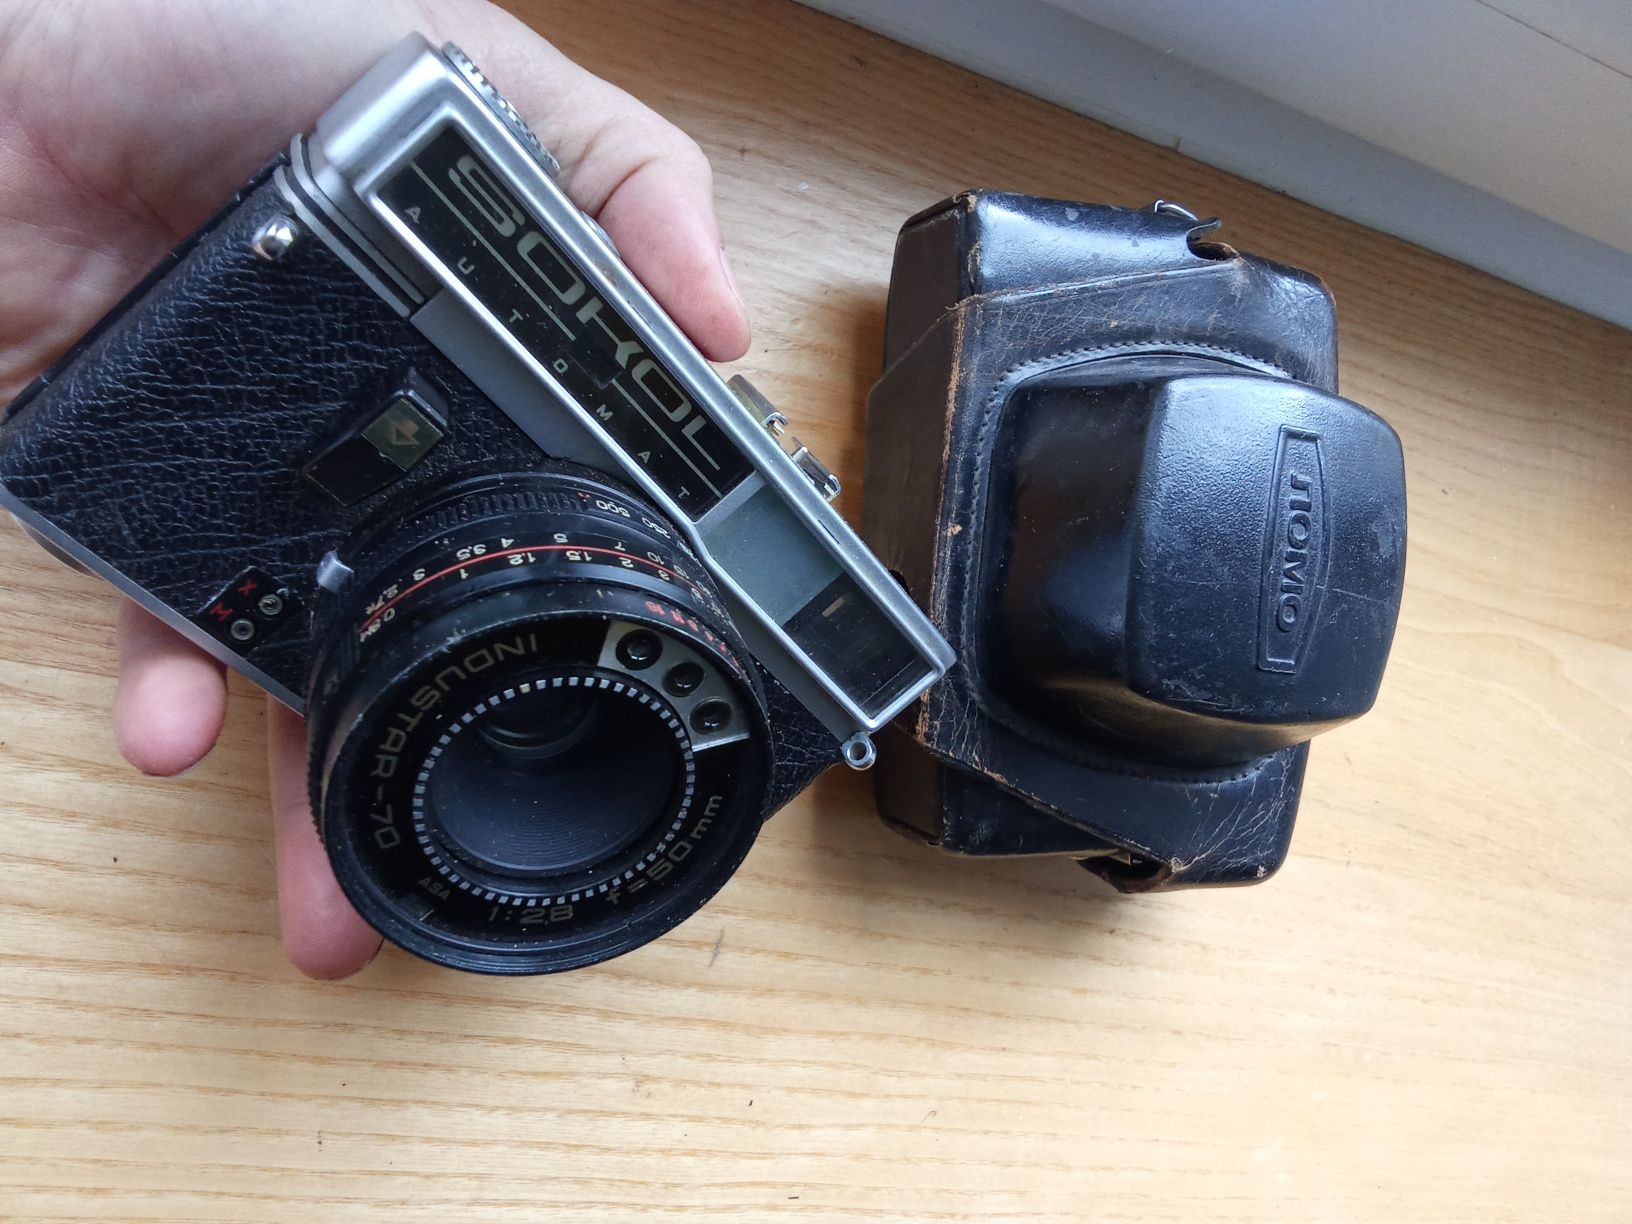 aparat fotograficzny sokol z obiektywem industar70  F2.8 50mm